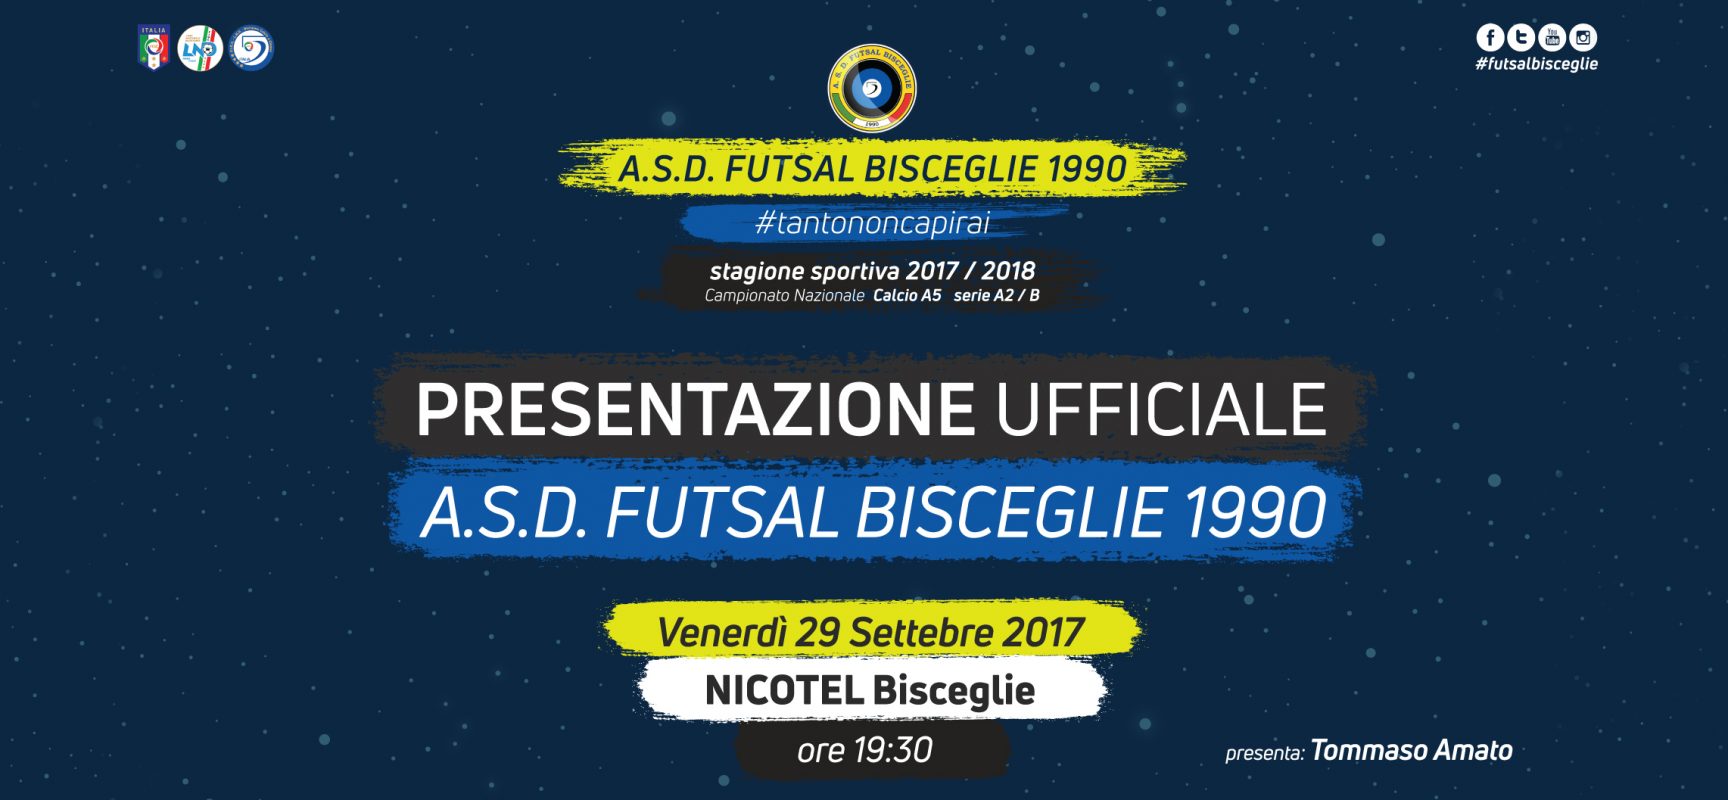 Futsal Bisceglie, domani la presentazione ufficiale al Nicotel